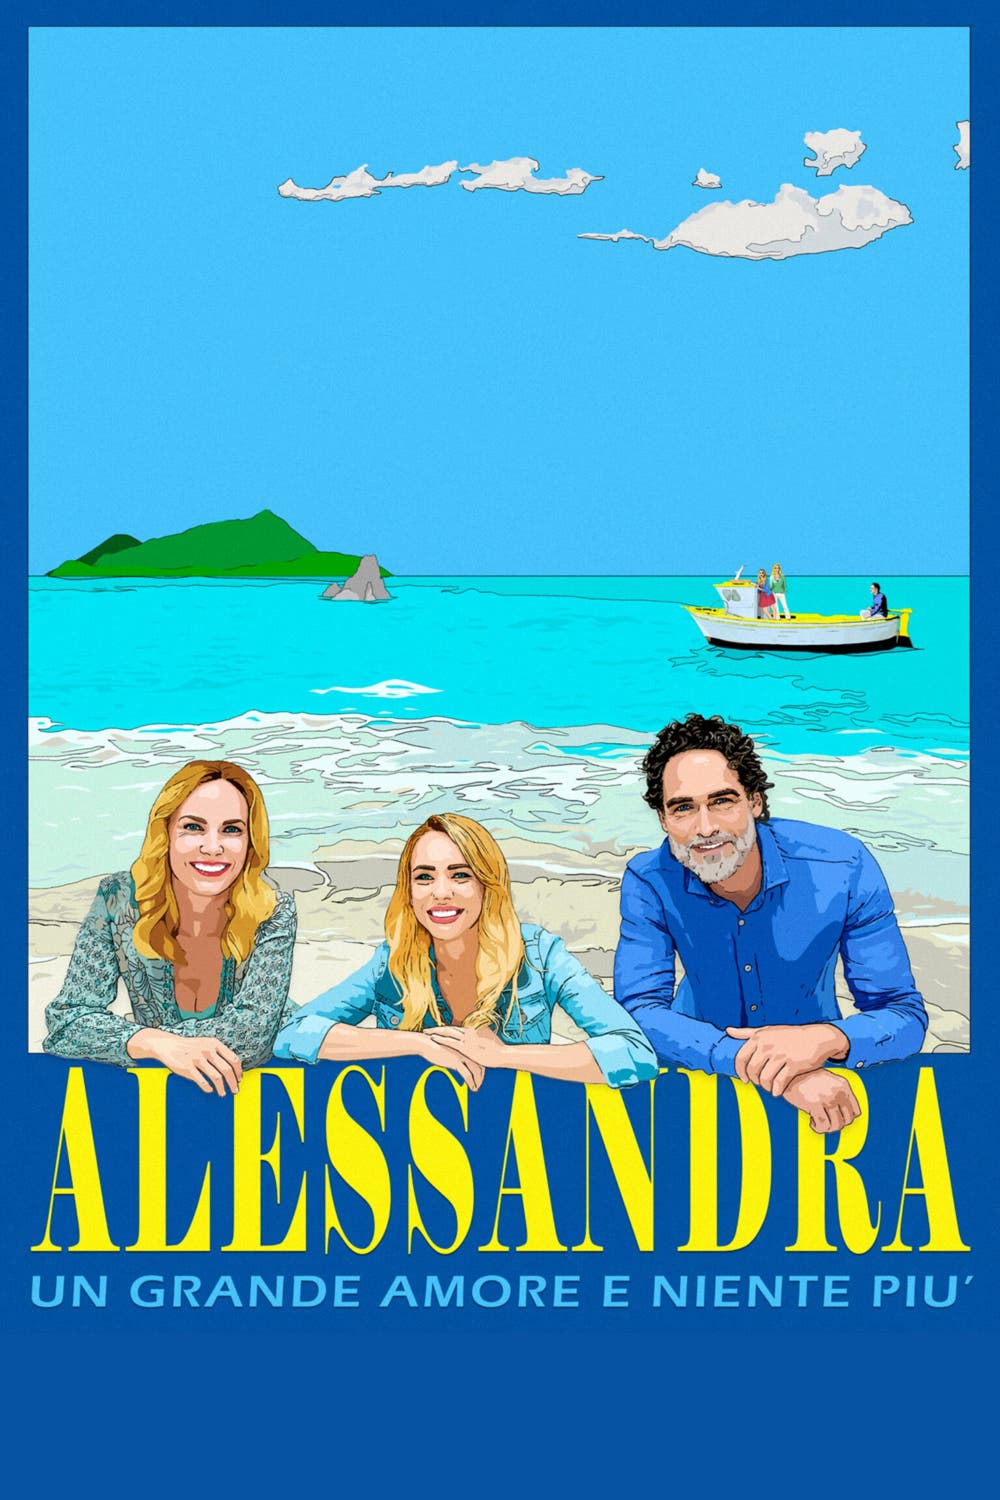 Alessandra – Un grande amore e niente più [HD] (2020)